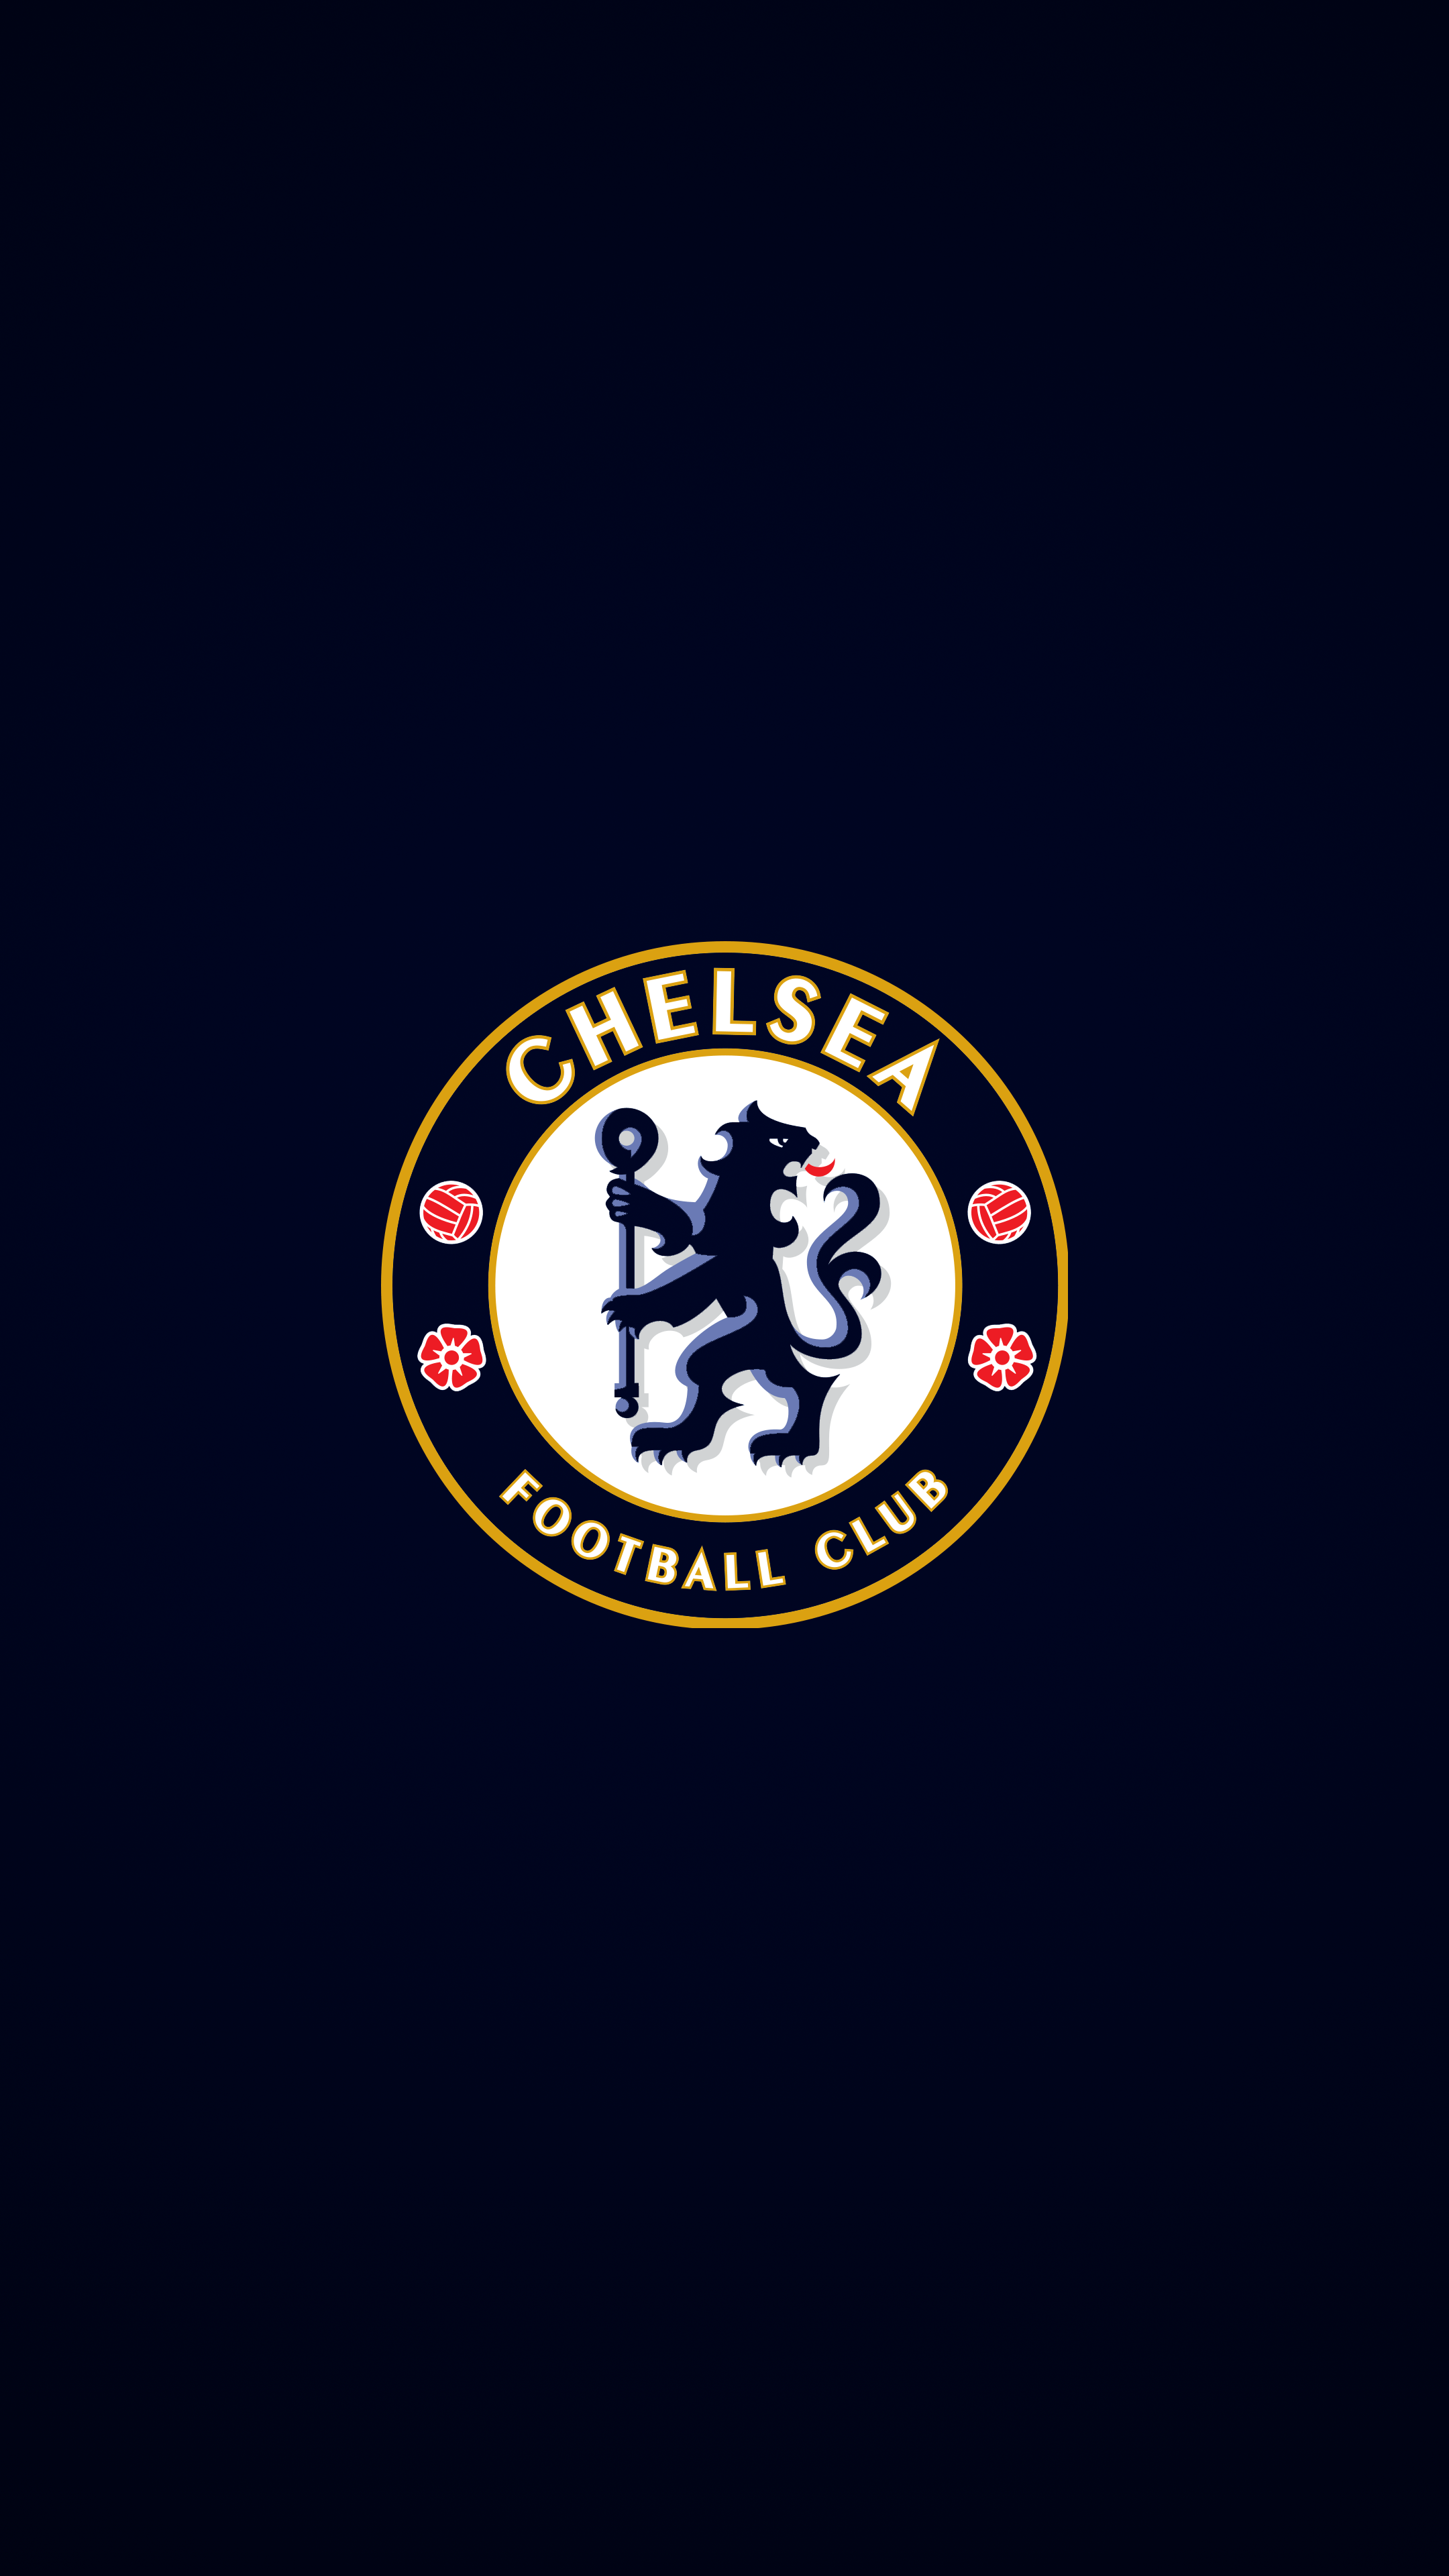 Chelsea 4K Wallpaper. Sepak bola, Olahraga, Desain logo